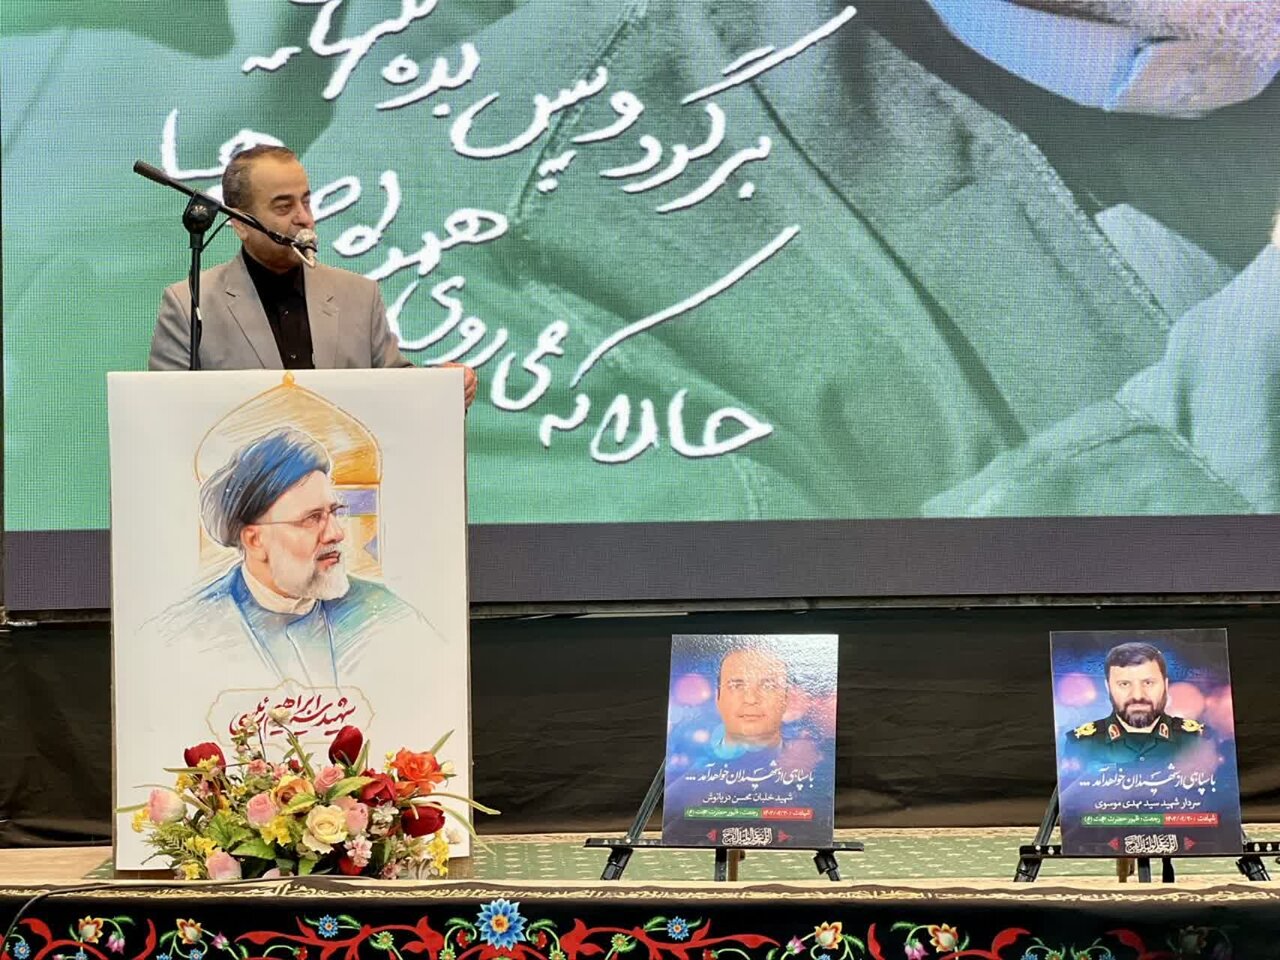 شهید رئیسی، ریل گذاری جدیدی را در خدمتگذاری به مردم نهاد کرد - خبرگزاری مهر | اخبار ایران و جهان